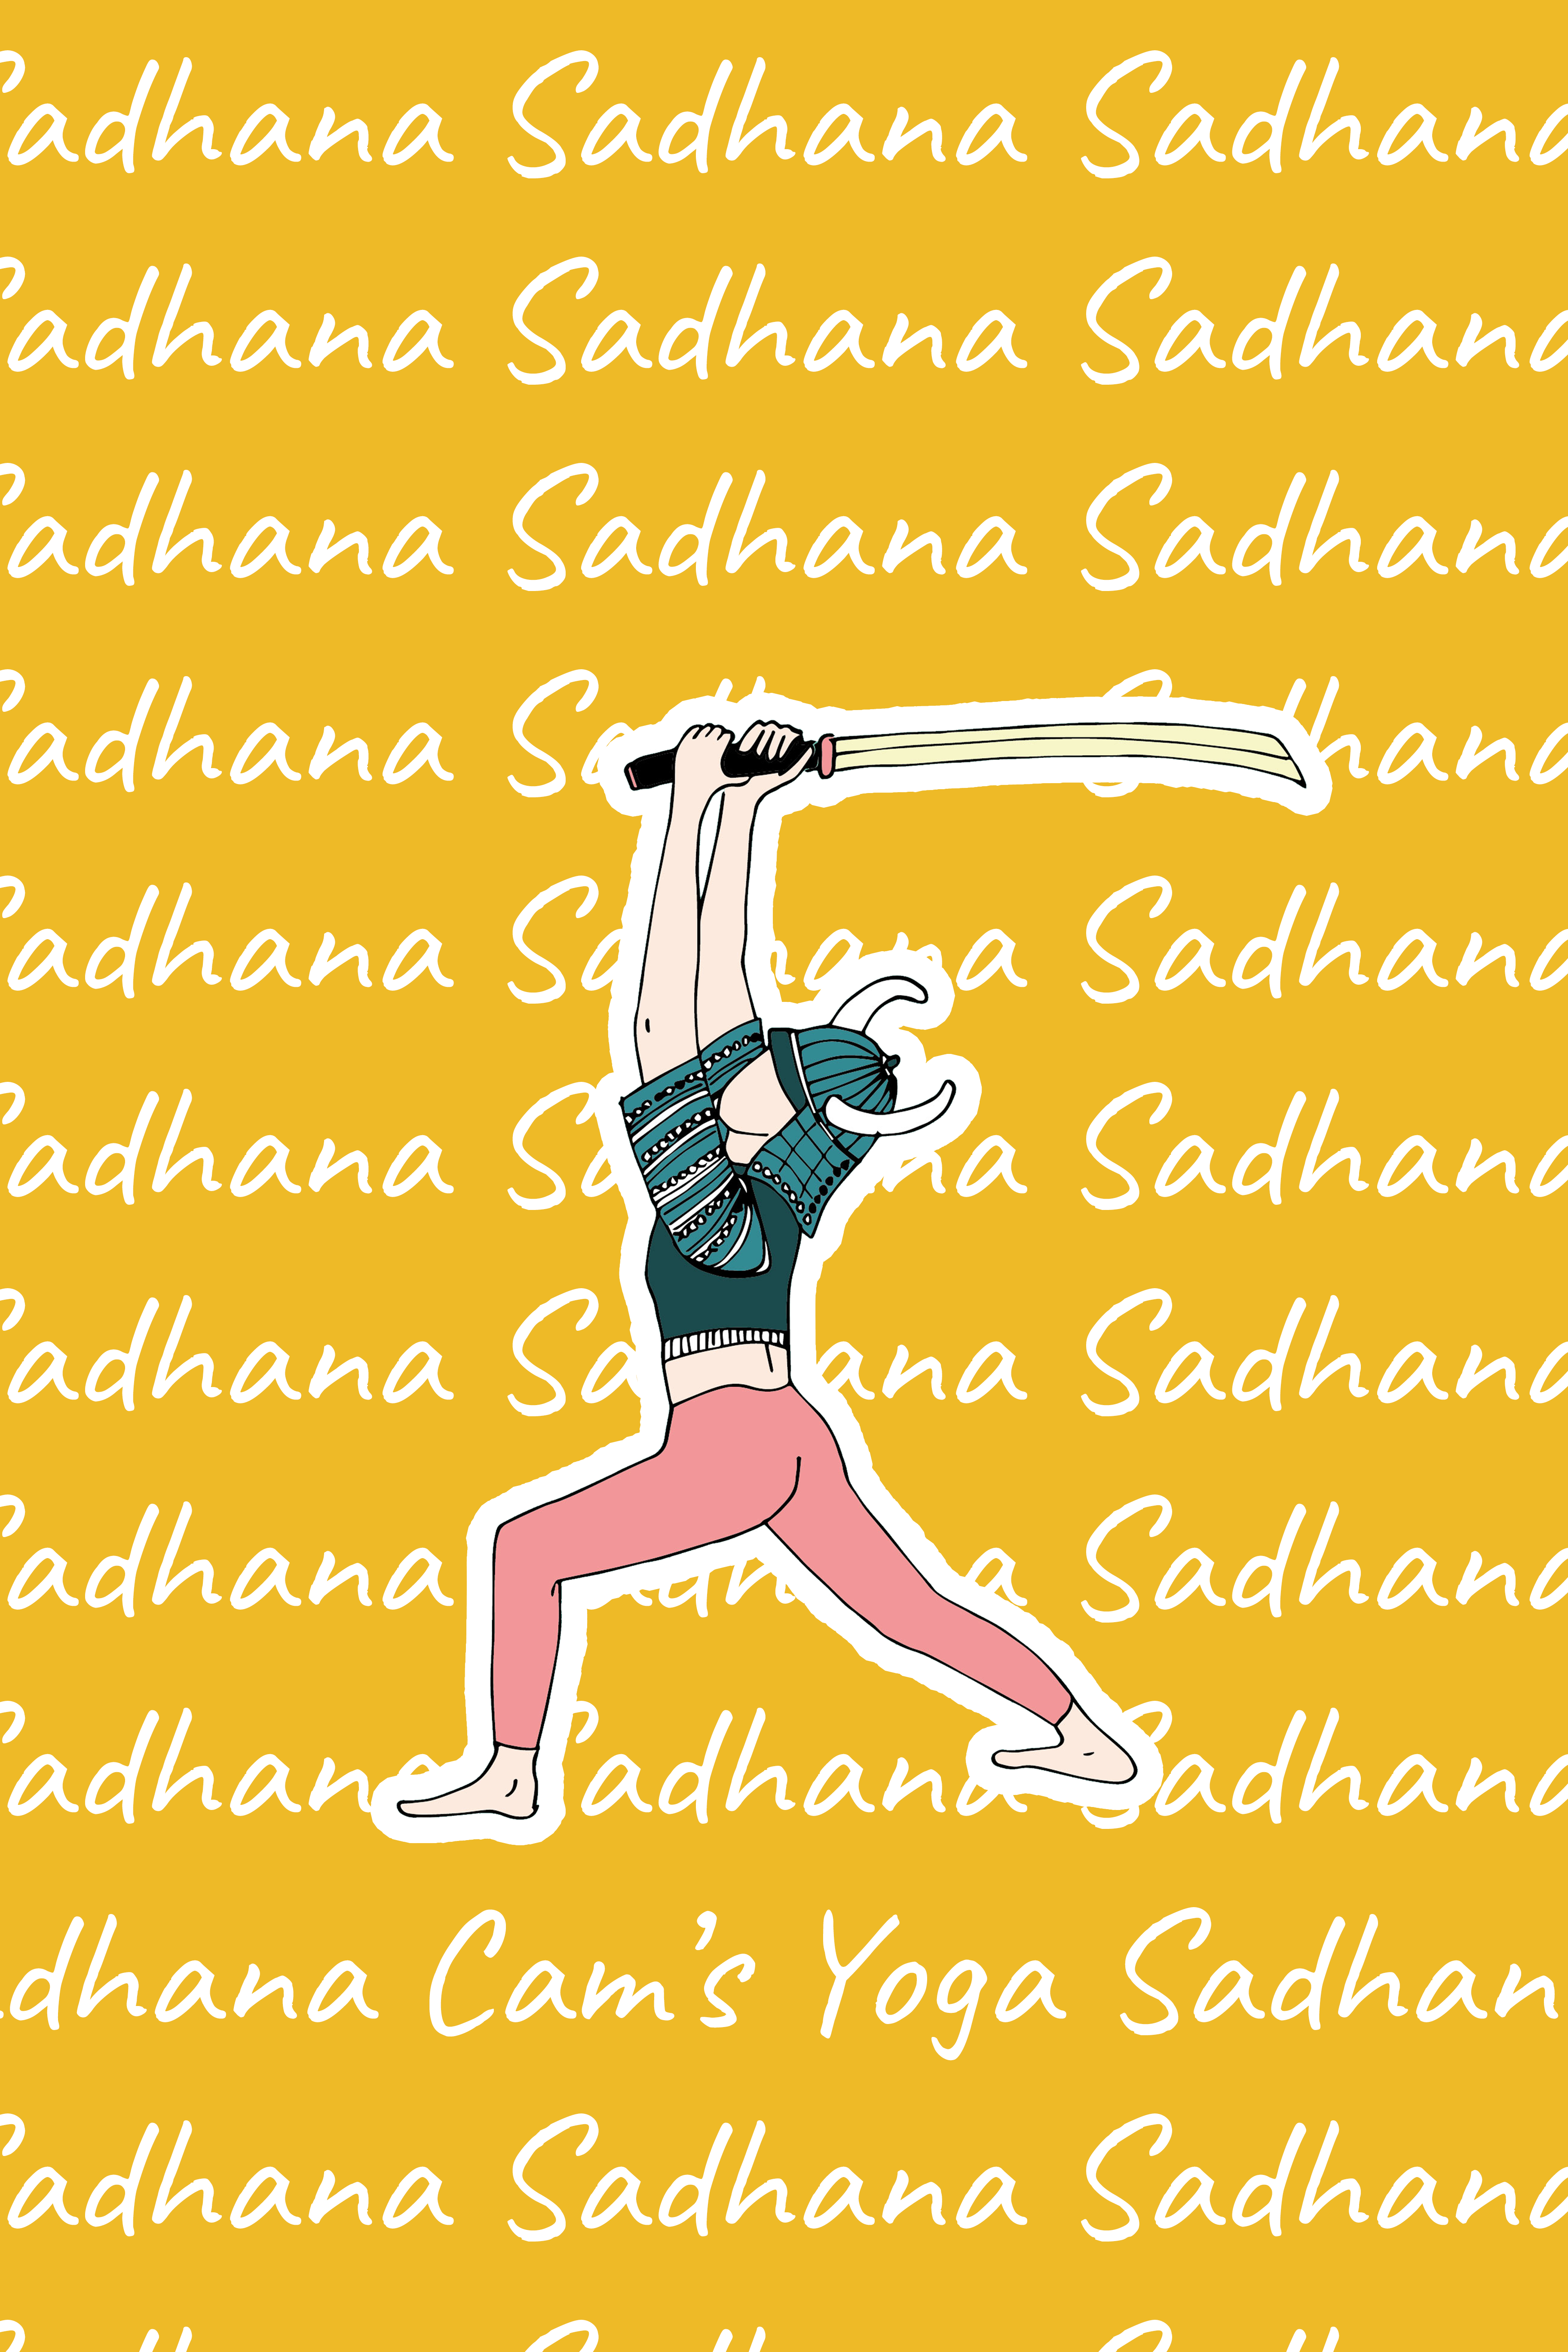 3 sadhana lauriane rouillet cam's yoga